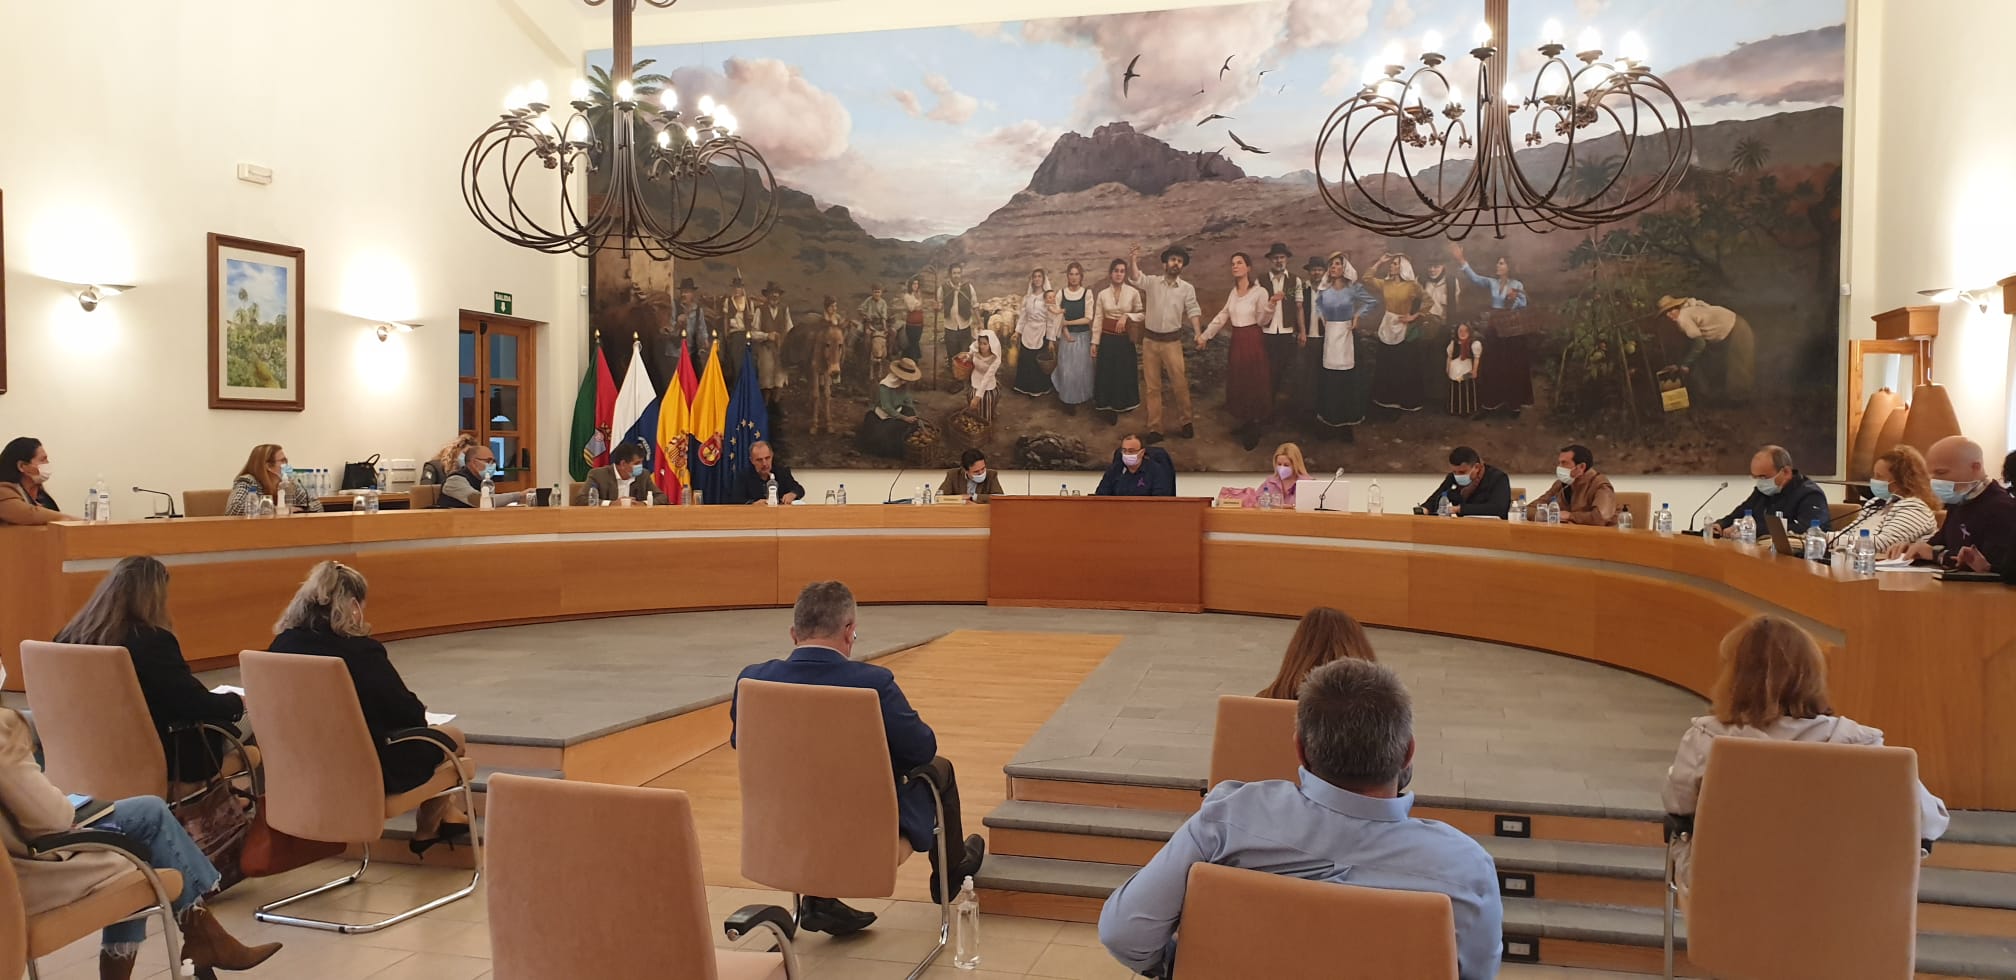  El alcalde Francisco García convoca la Junta de Seguridad porque “los recursos de la guardia civil son insuficientes”